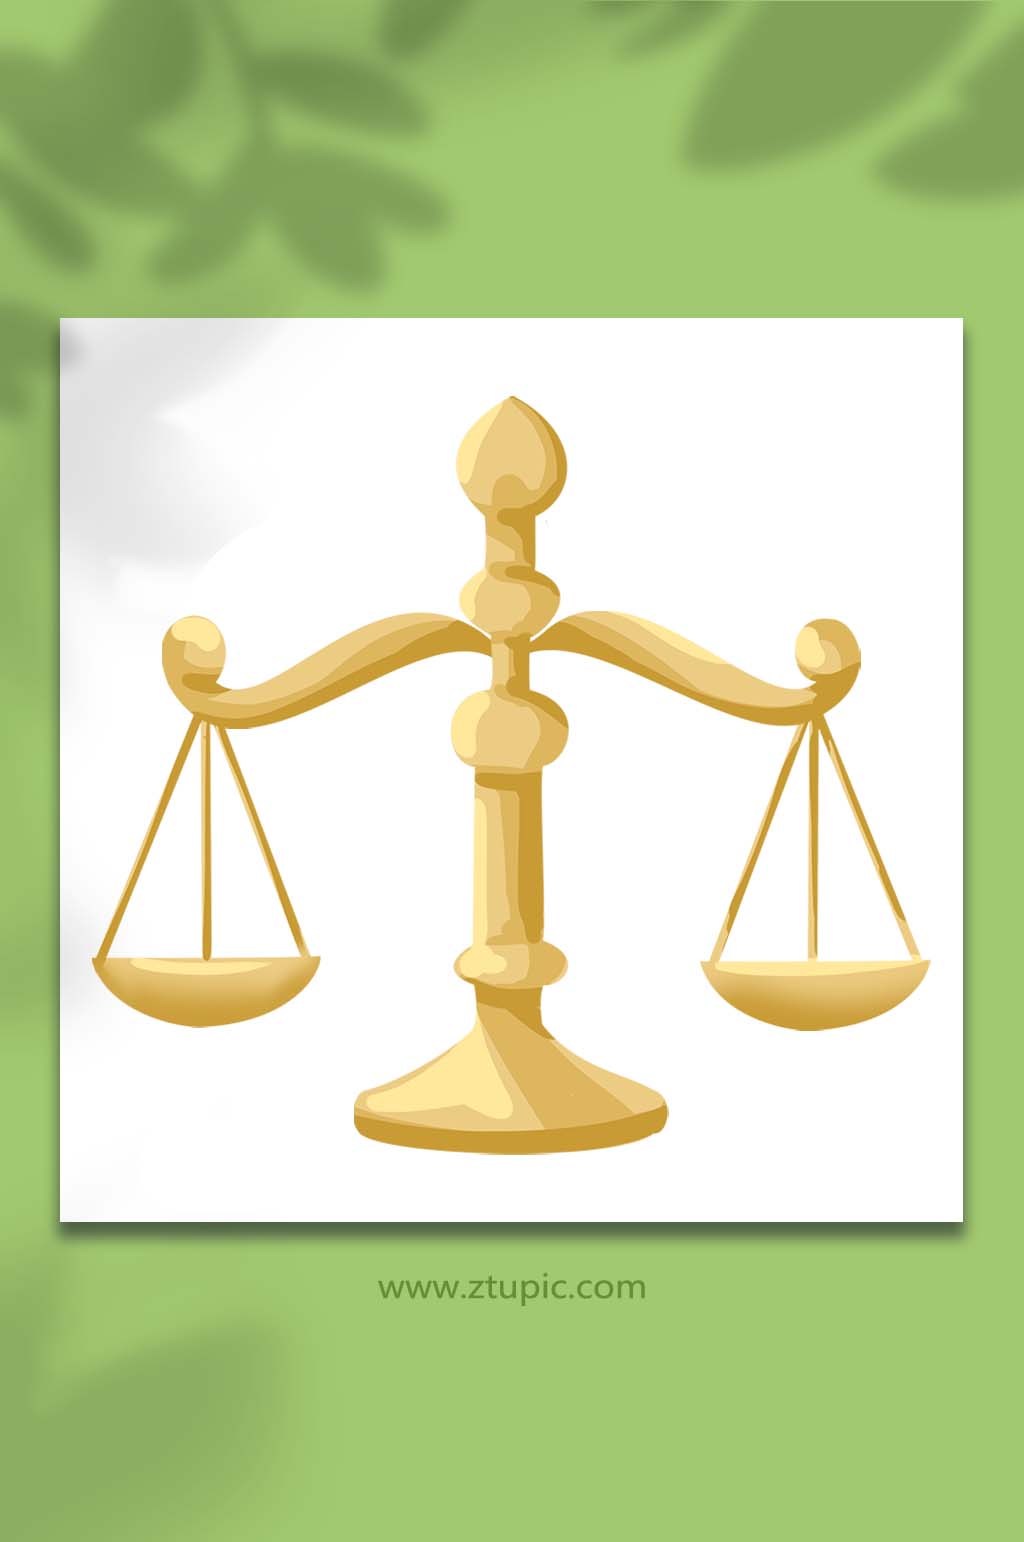 法律法庭天平设计元素立即下载法律法庭天平设计元素立即下载法律法庭